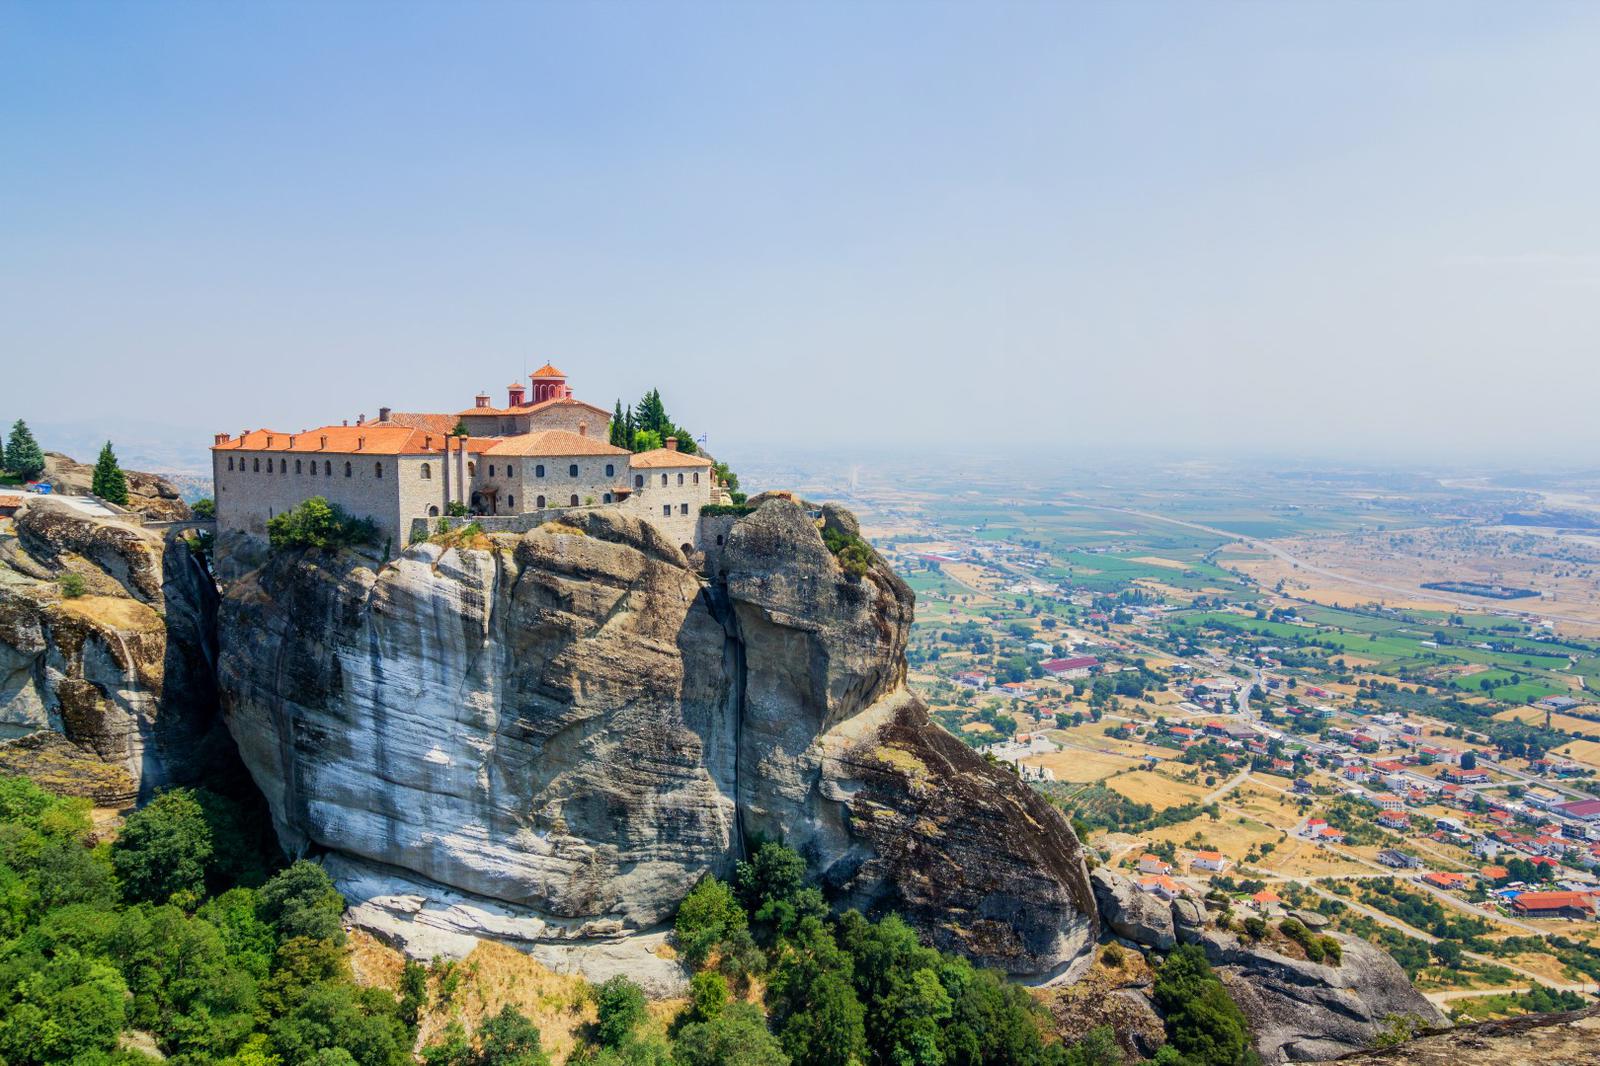 Los monasterios de Meteora, Grecia.jpg